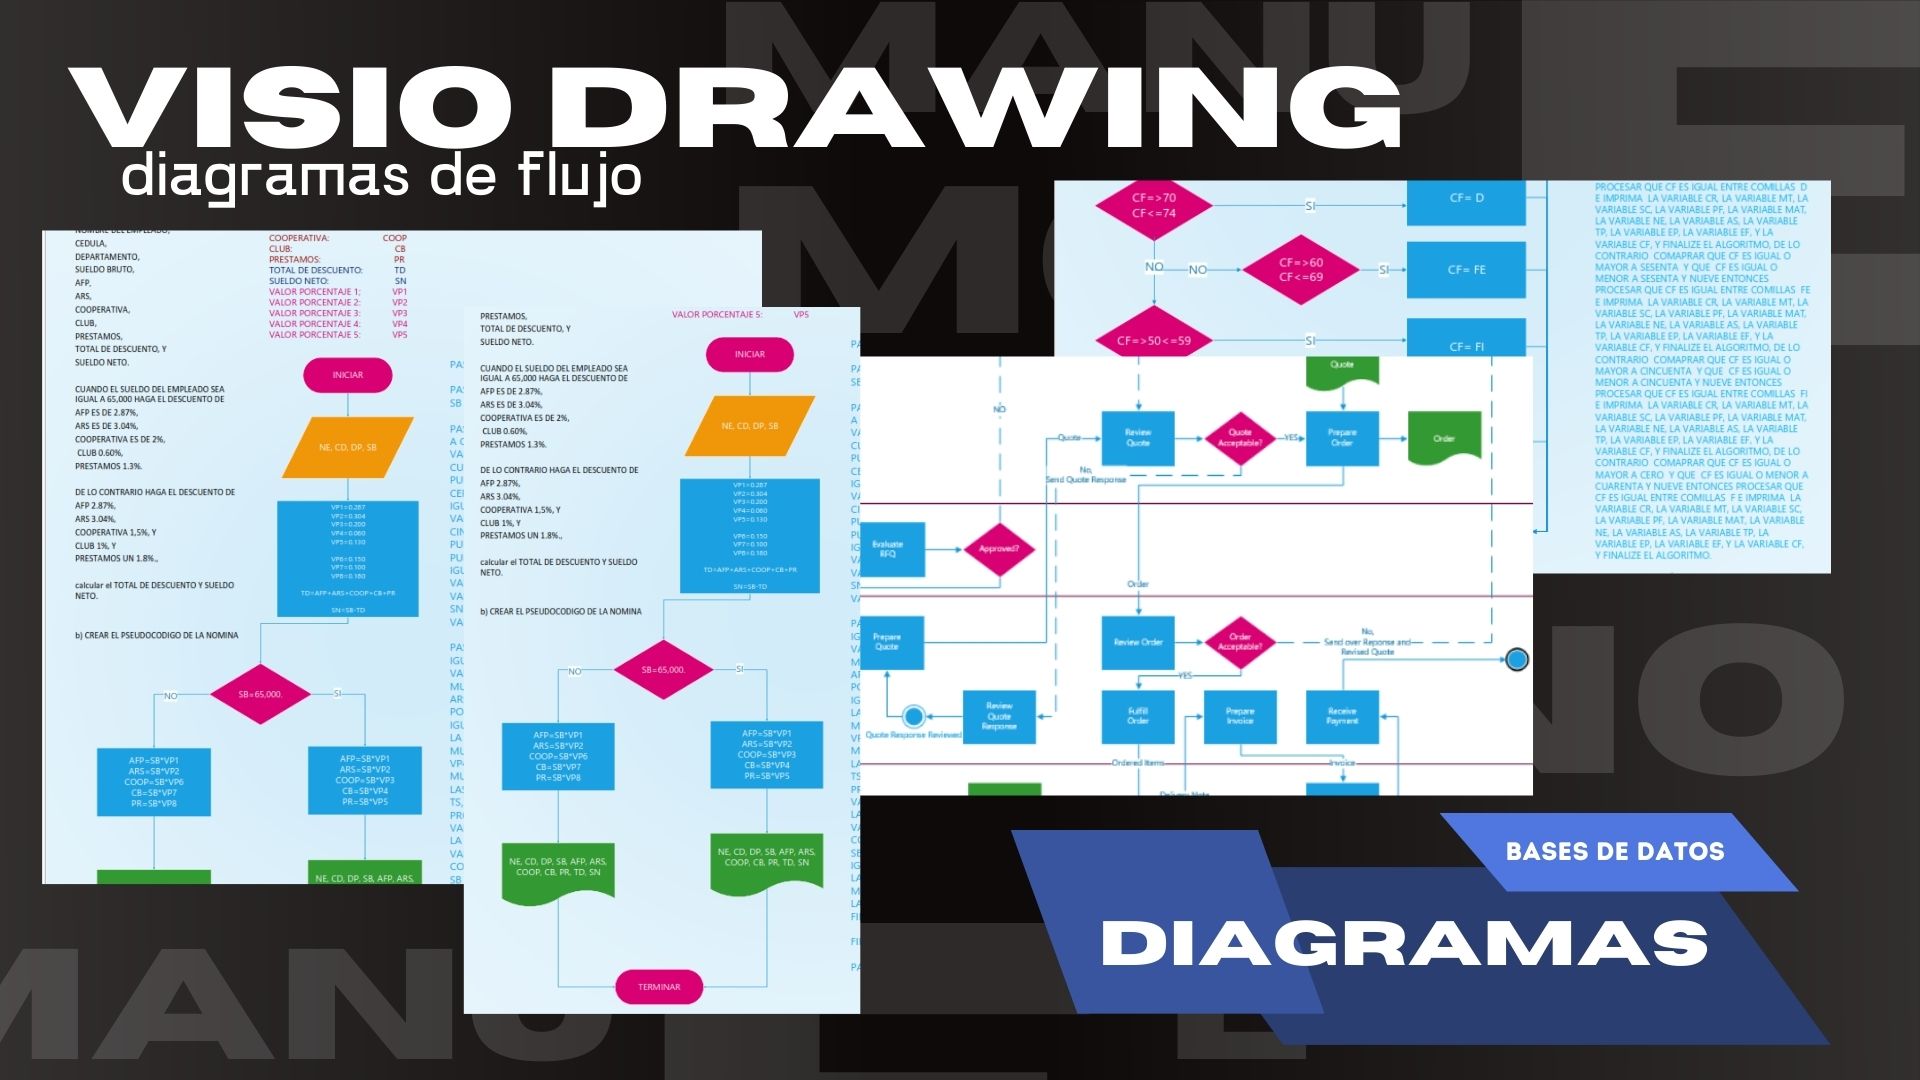 VISIO DRAWING

diagramas de flujo

   

BASES DE DATOS

DIAGRAMAS